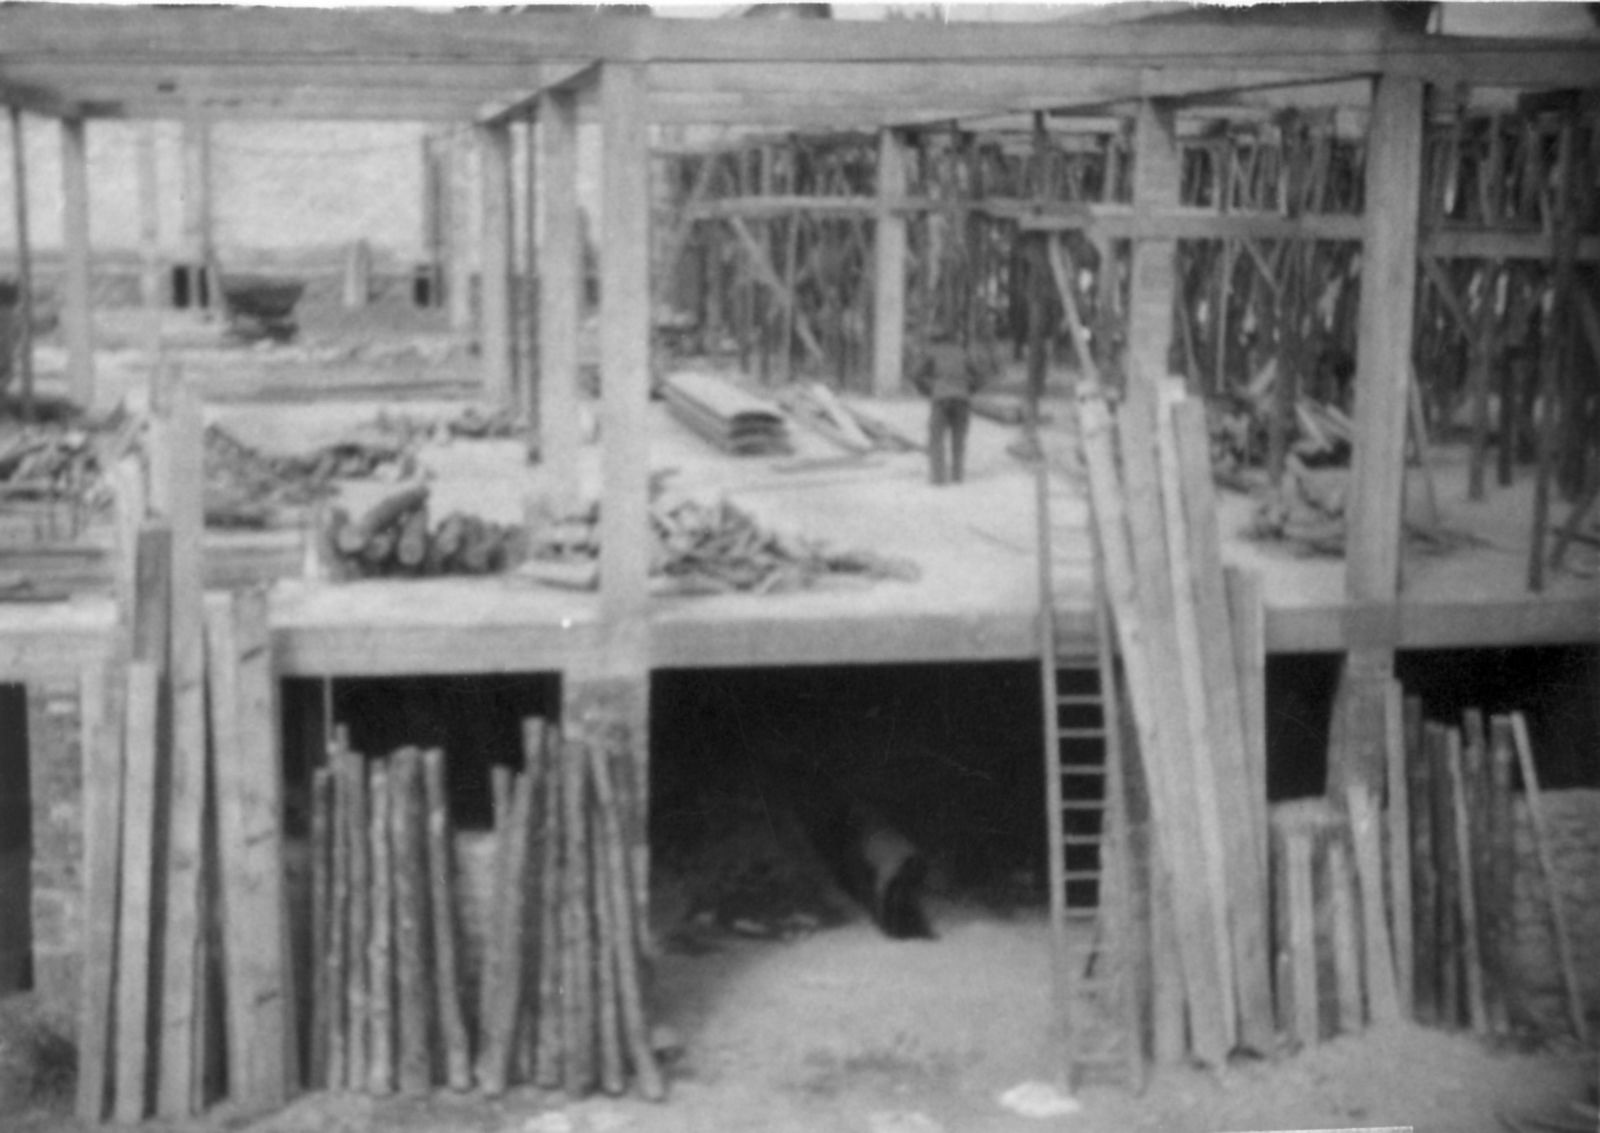 La reconstruction de l'usine Sallandrouze, dès 1948. Les sheds en cours de construction, avec leur structure en béton armé sur pilotis (coll. part.)